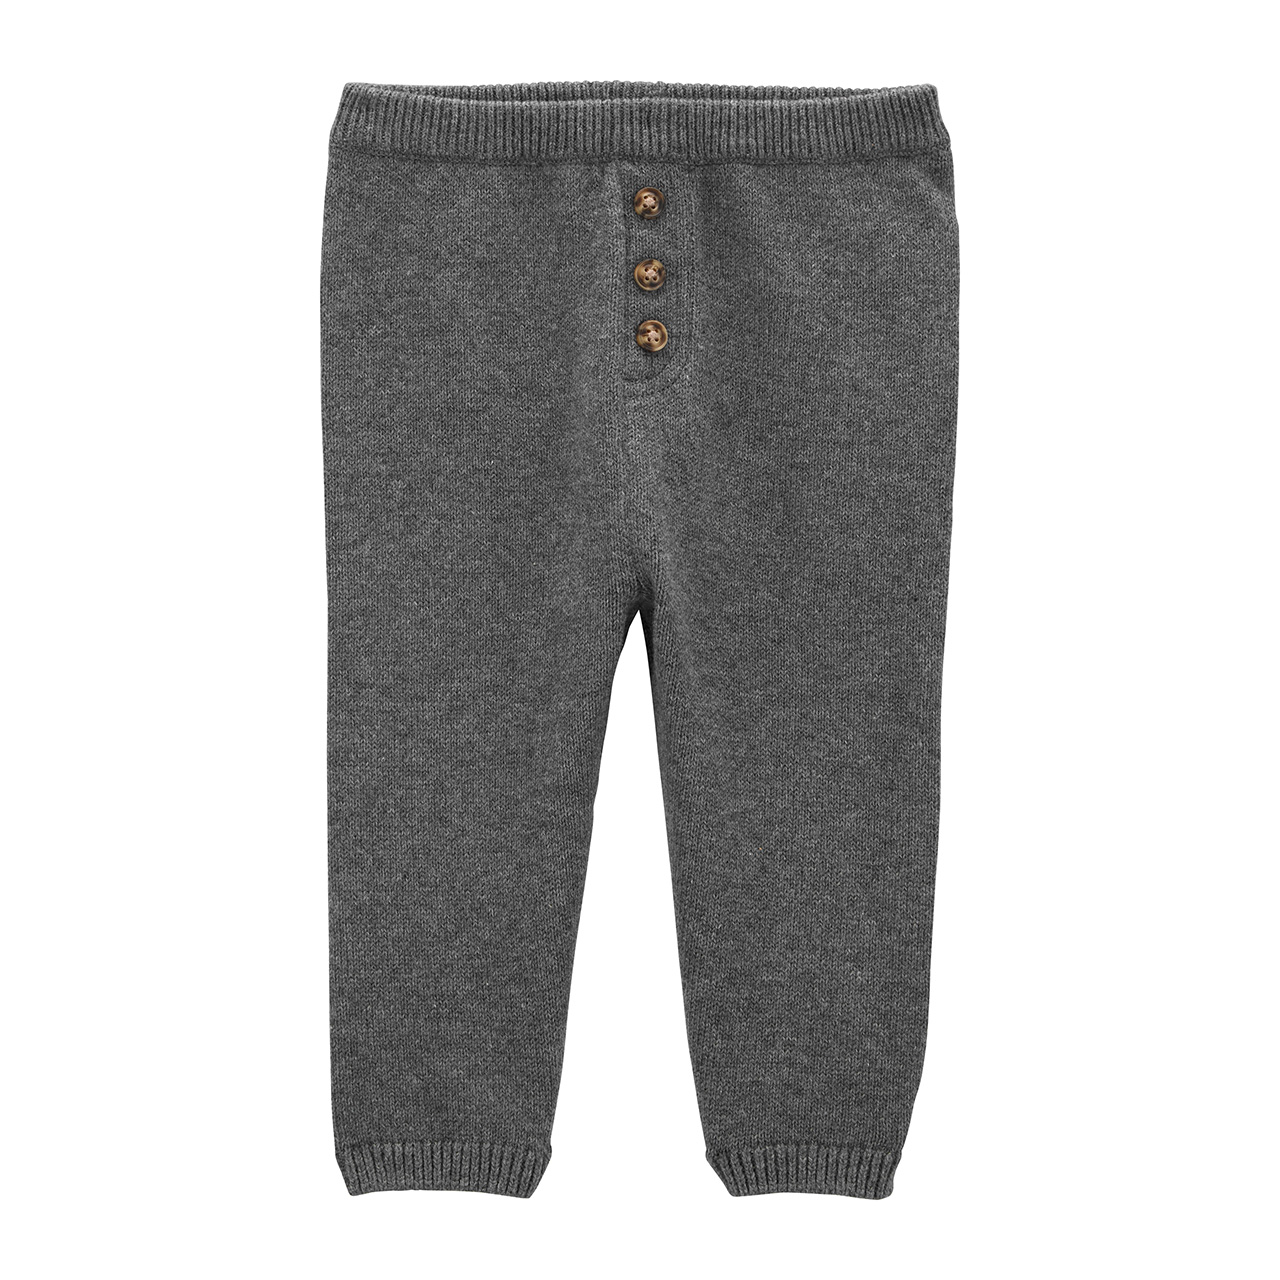 A pair of dark grey leggings for babies.